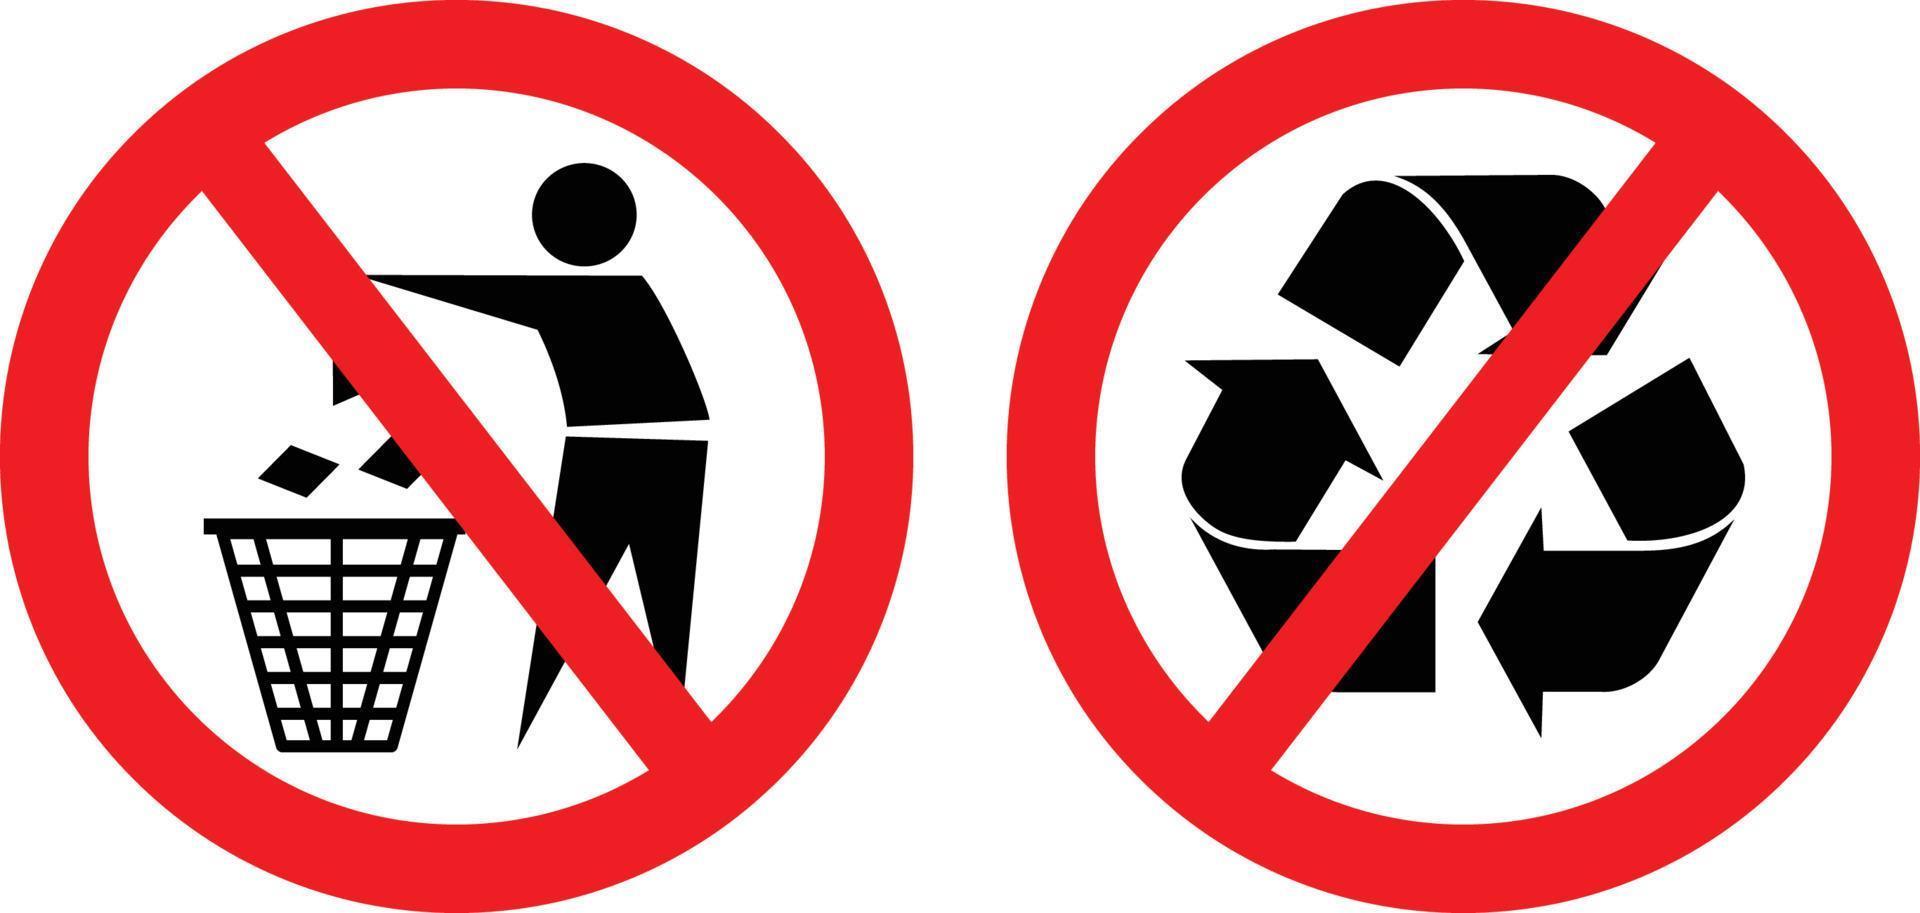 geen afval weggooien of weggooien, geen recycling toegestaan pictogramsetteken vector